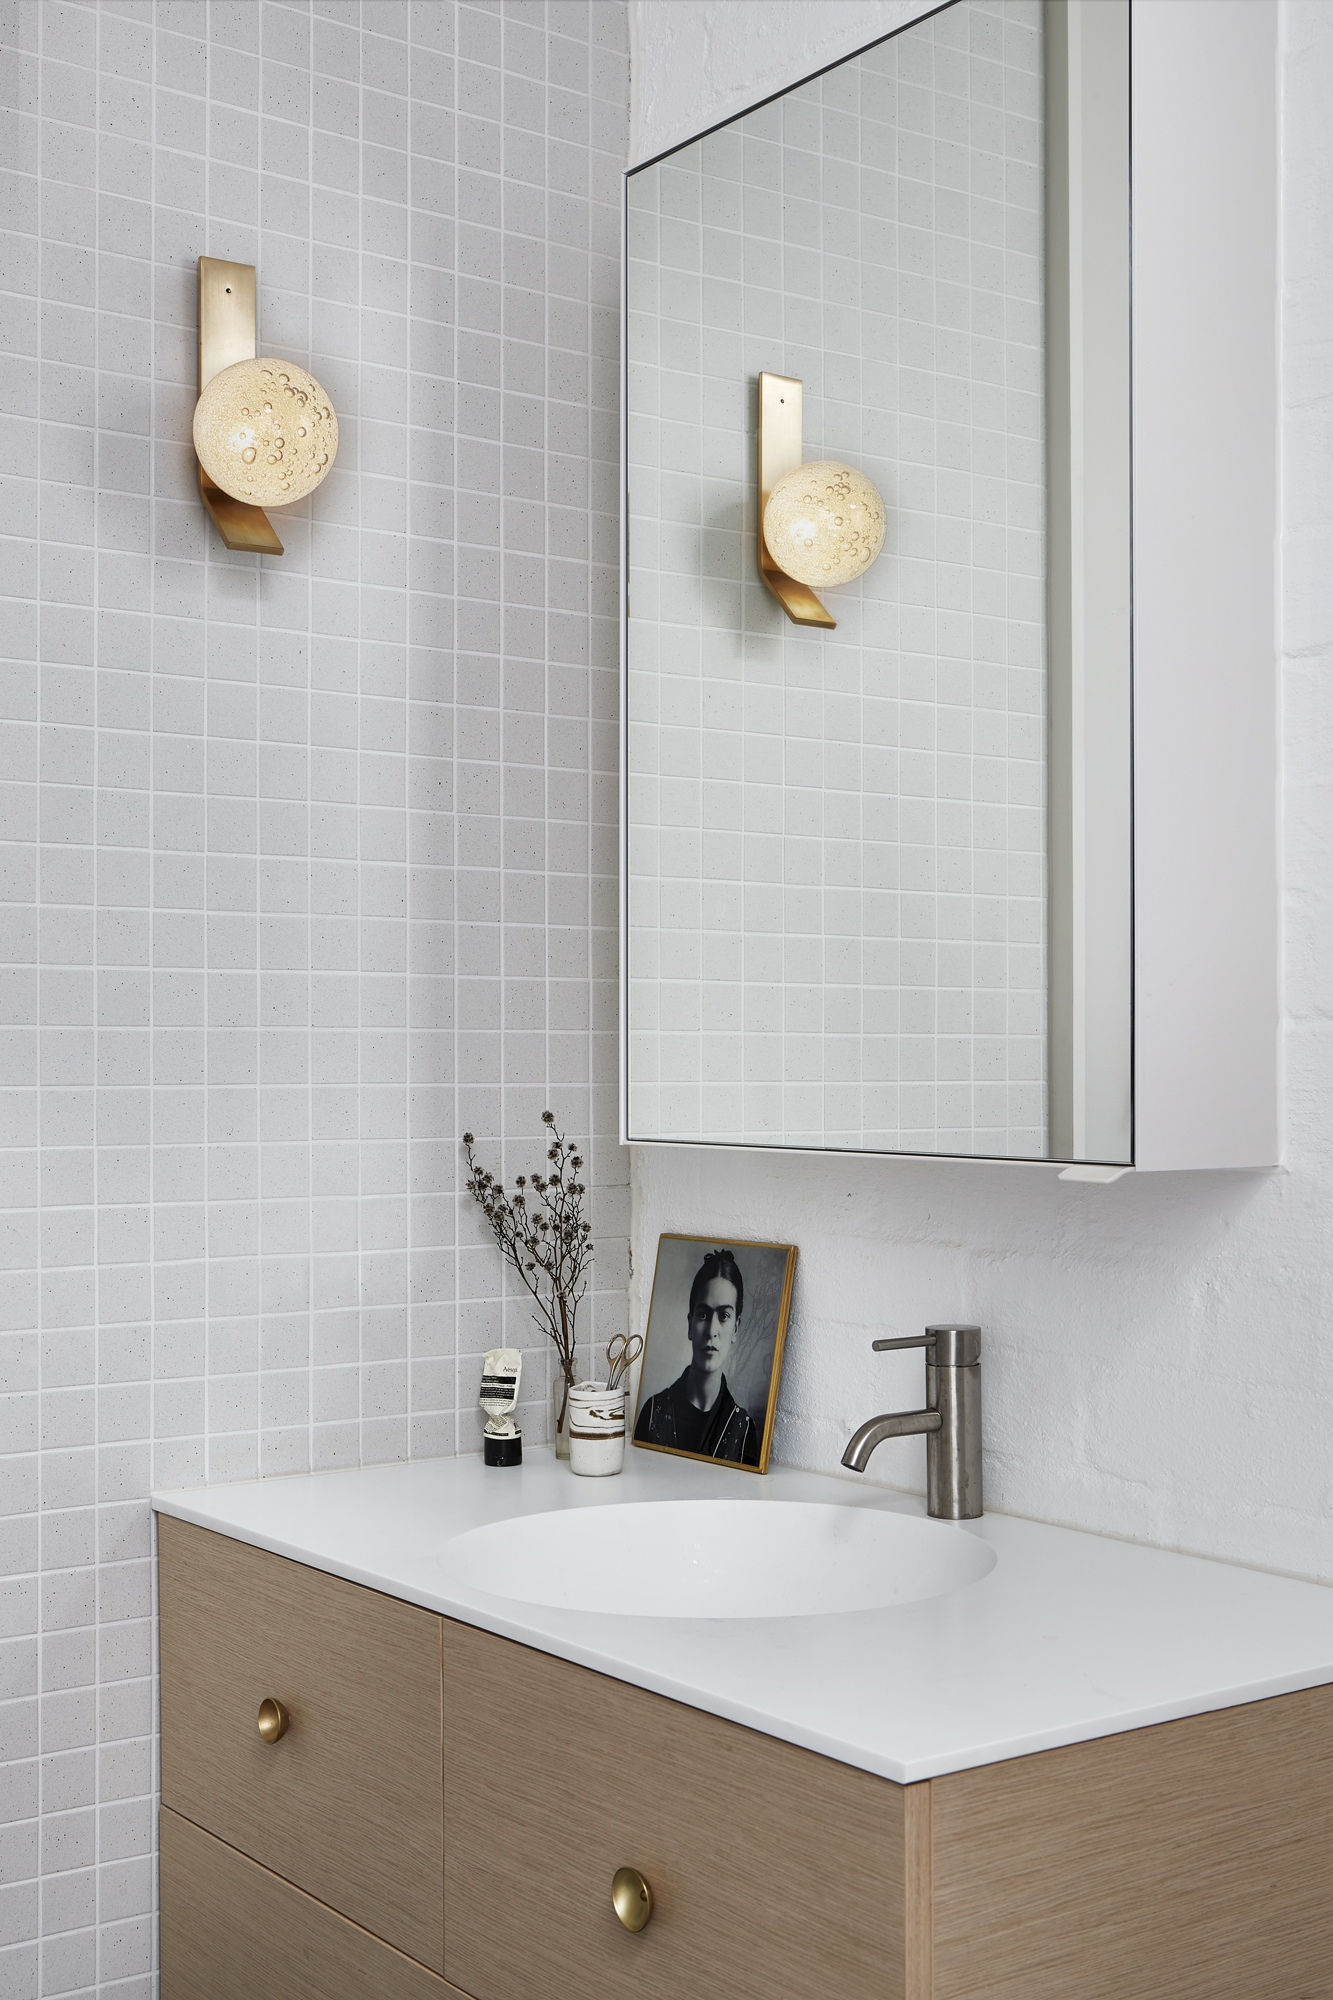 Sai lầm khá phổ biến trong thiết kế nội thất phòng tắm là chọn sai chiều cao của vòi so với bồn rửa.